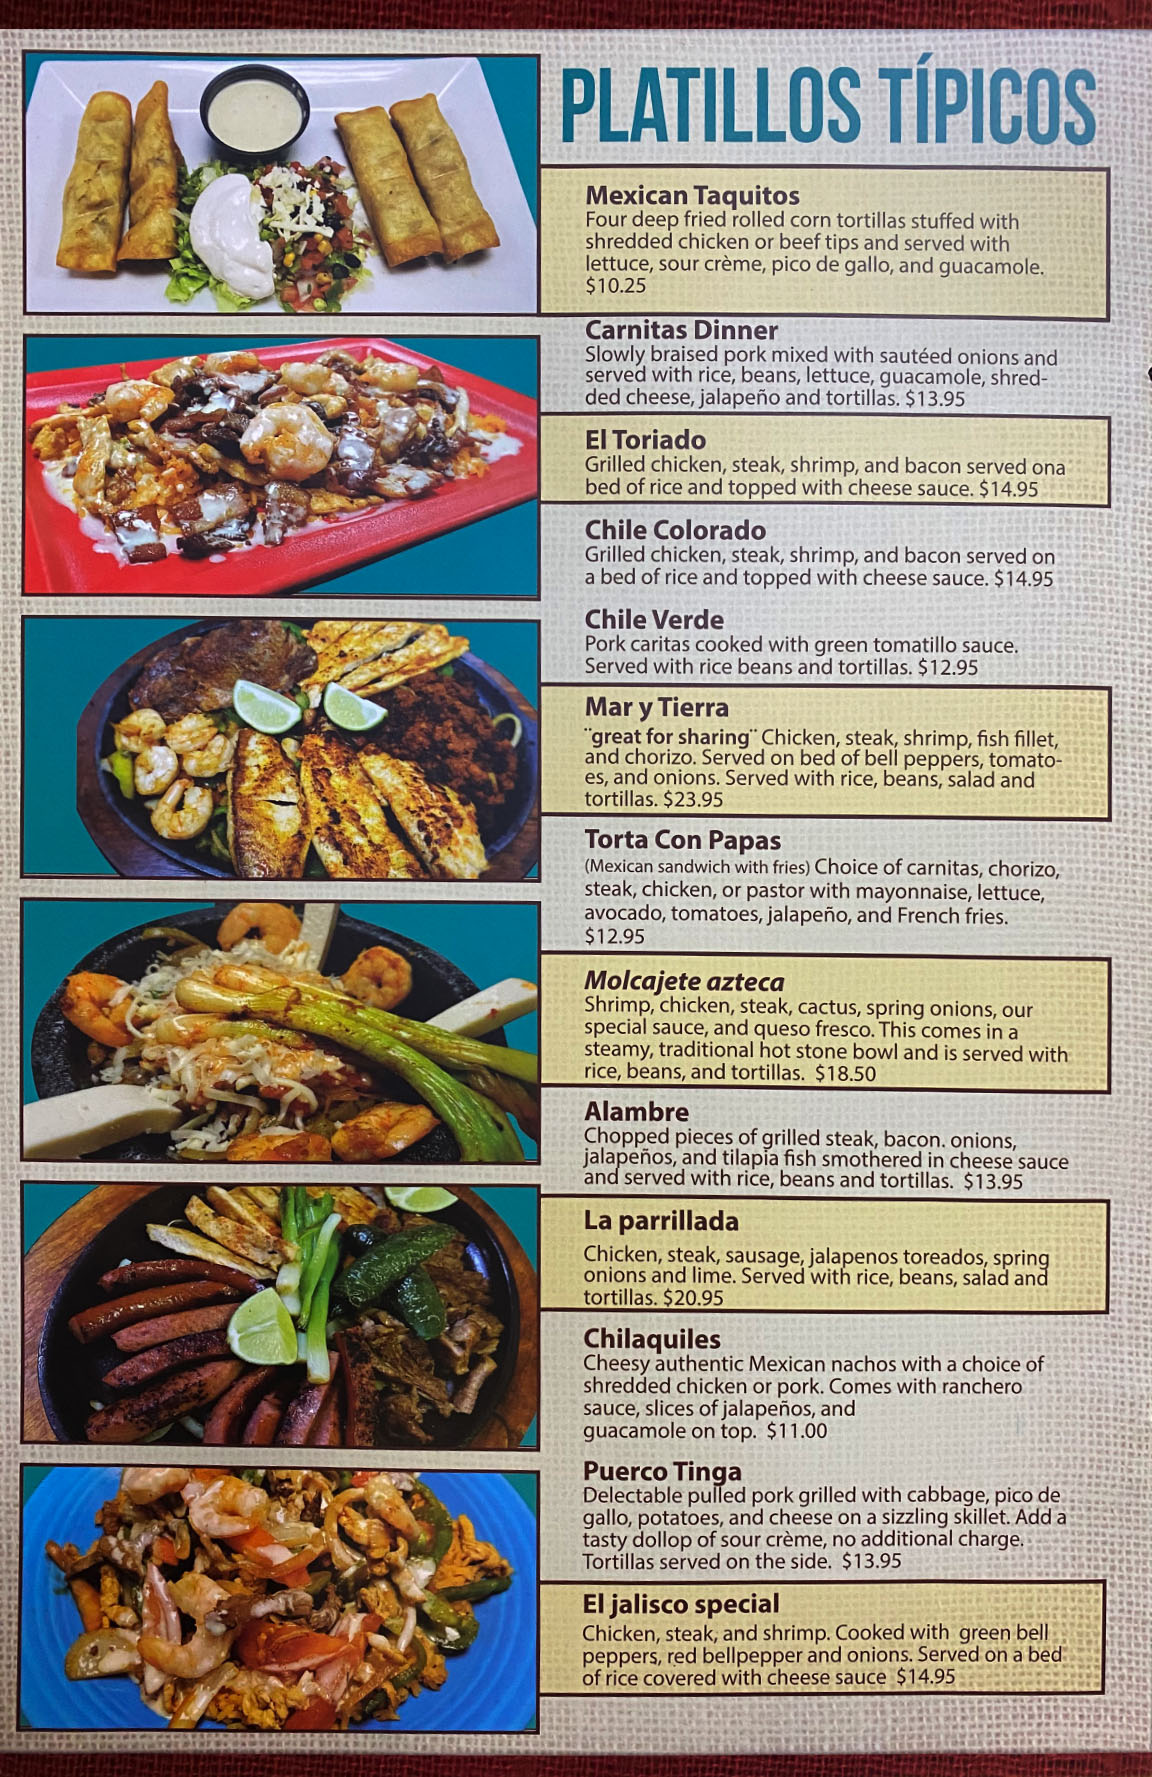 El Jarochito Mexican Restaurant menu image